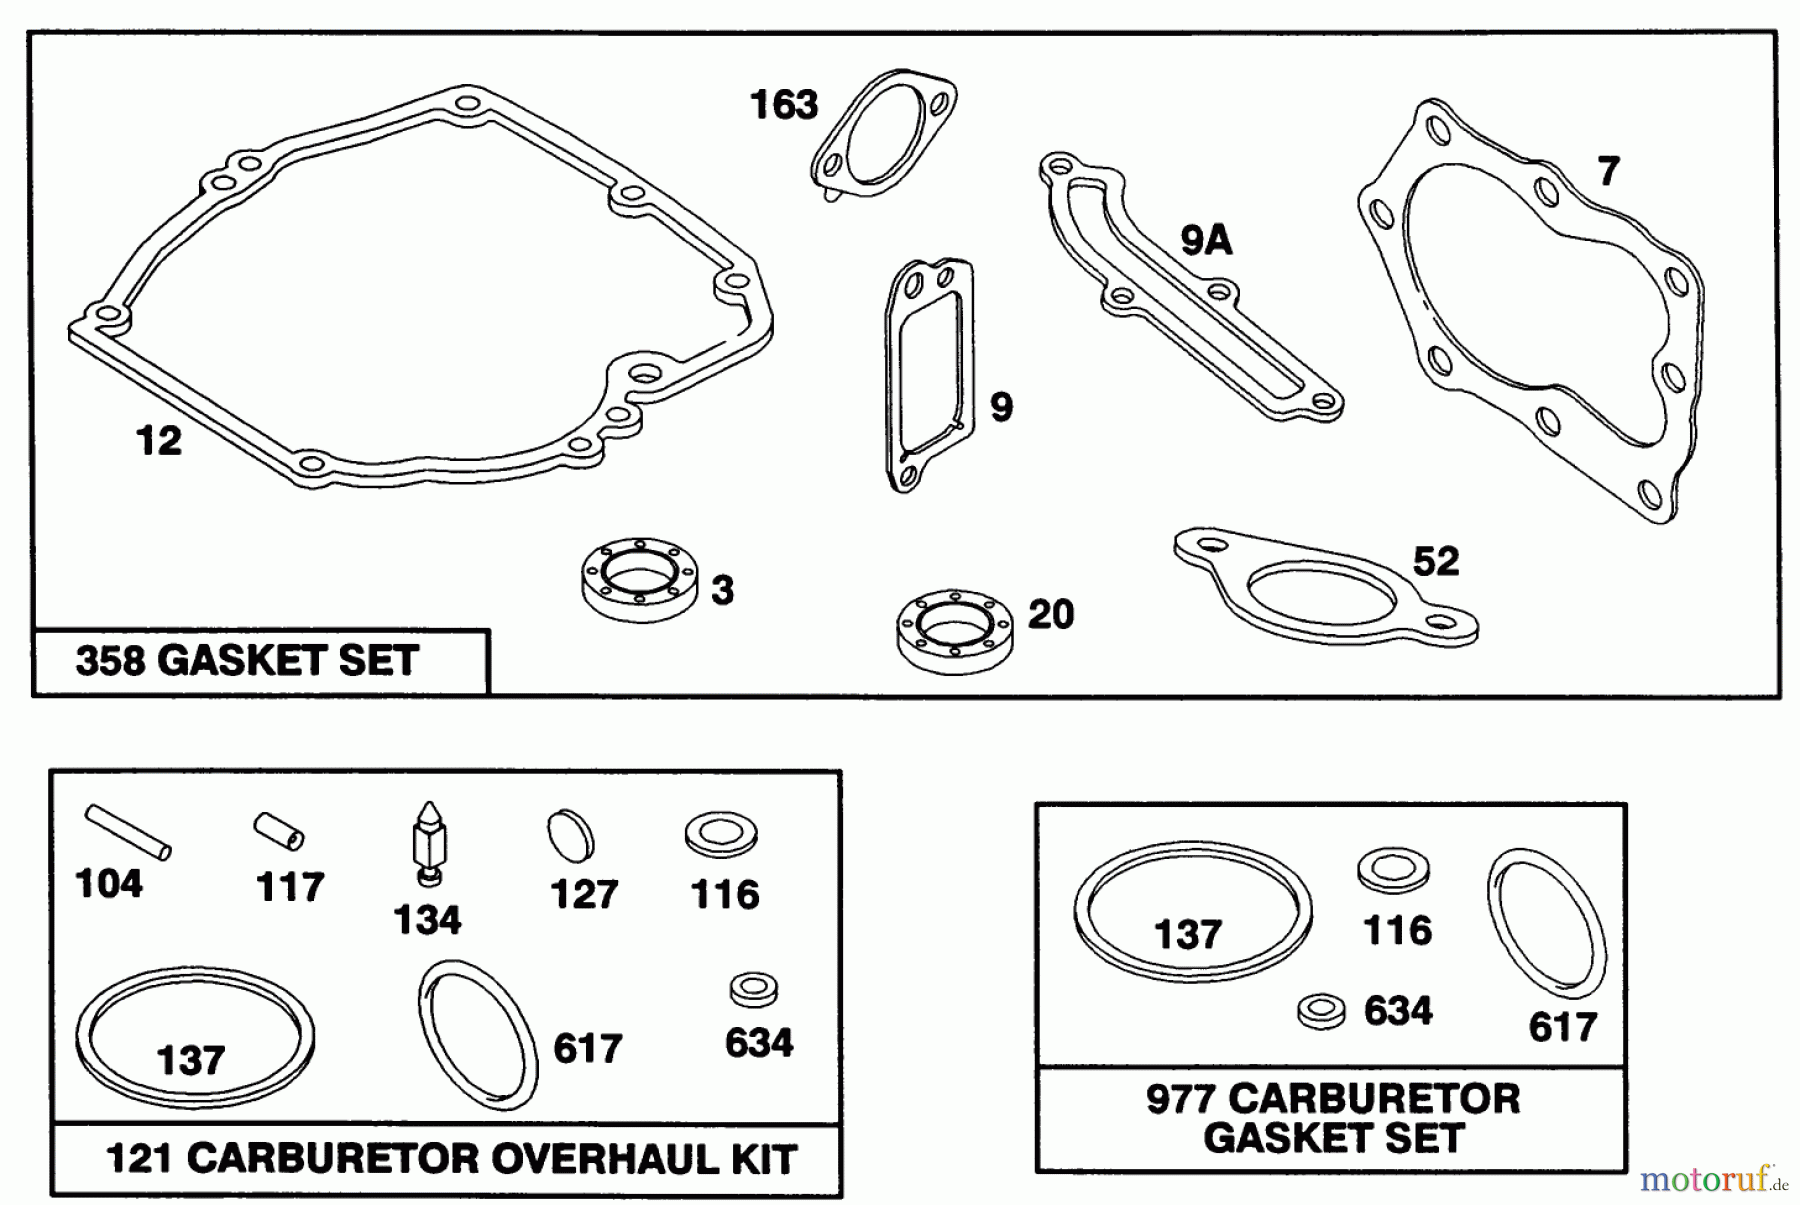  Toro Neu Mowers, Walk-Behind Seite 1 20217 - Toro Lawnmower, 1992 (2000001-2999999) ENGINE BRIGGS & STRATTON MODEL 124702-3115-01 #8